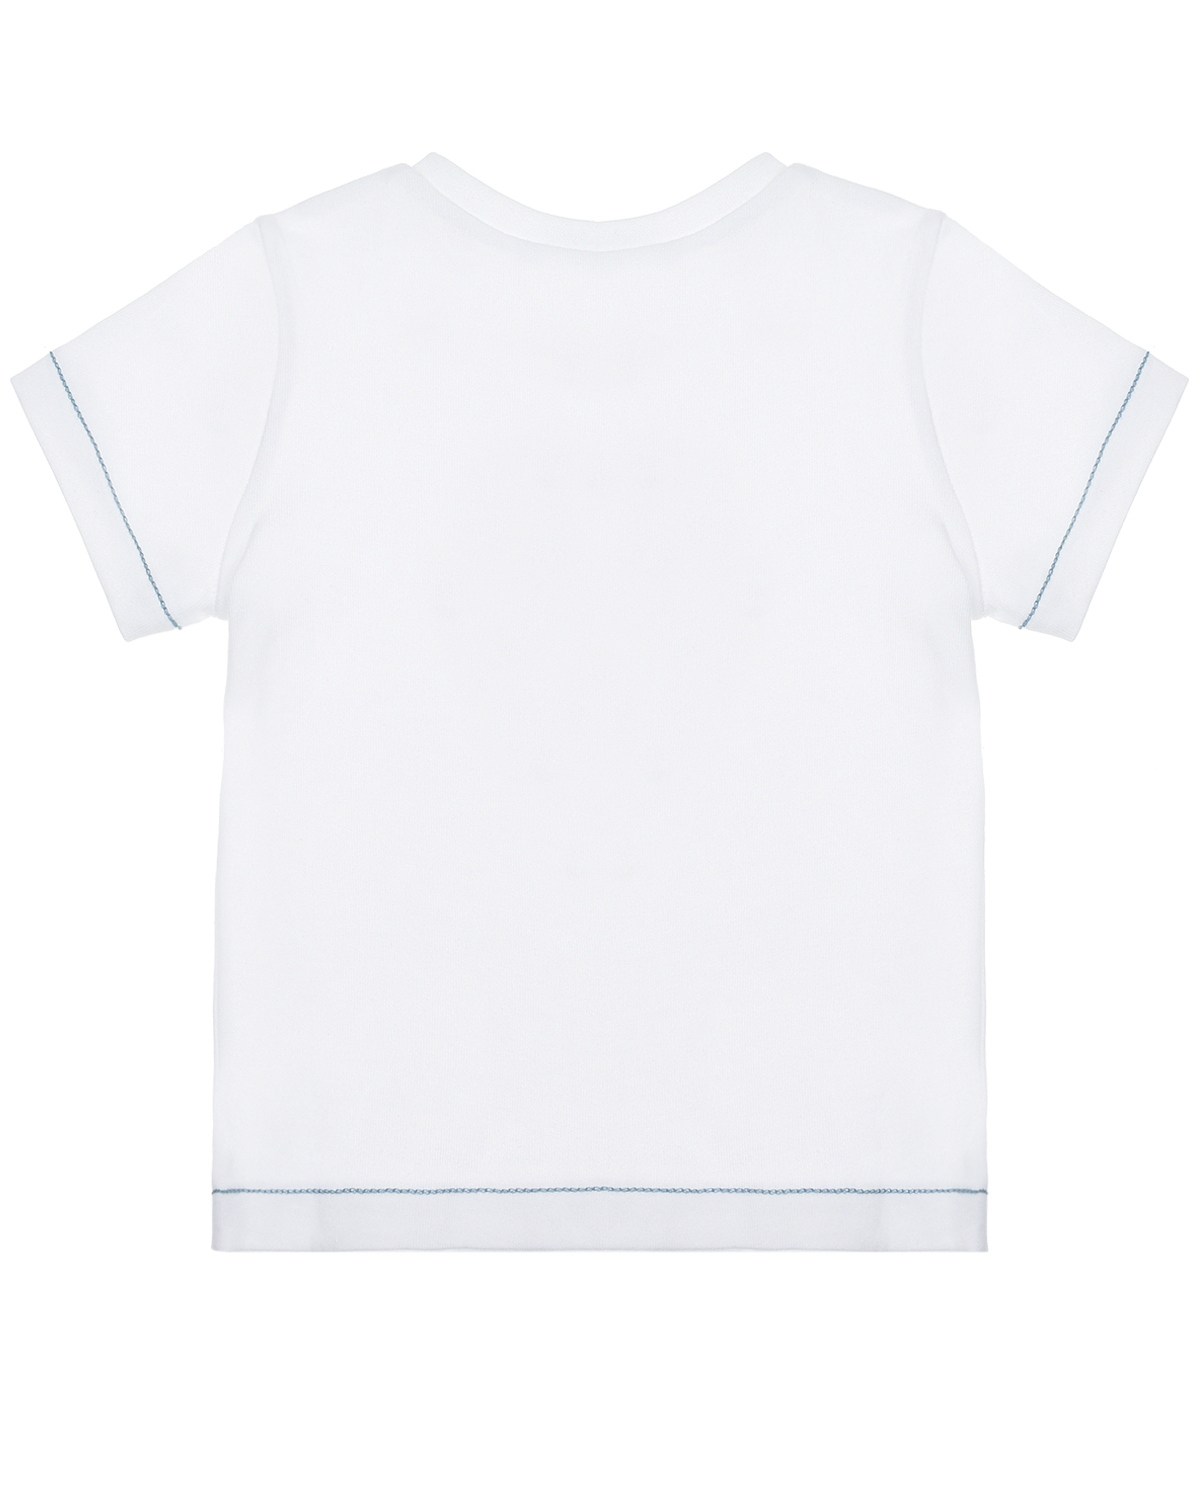 Белая футболка с принтом "рыбы" Tartine et Chocolat детская, размер 80, цвет белый - фото 2